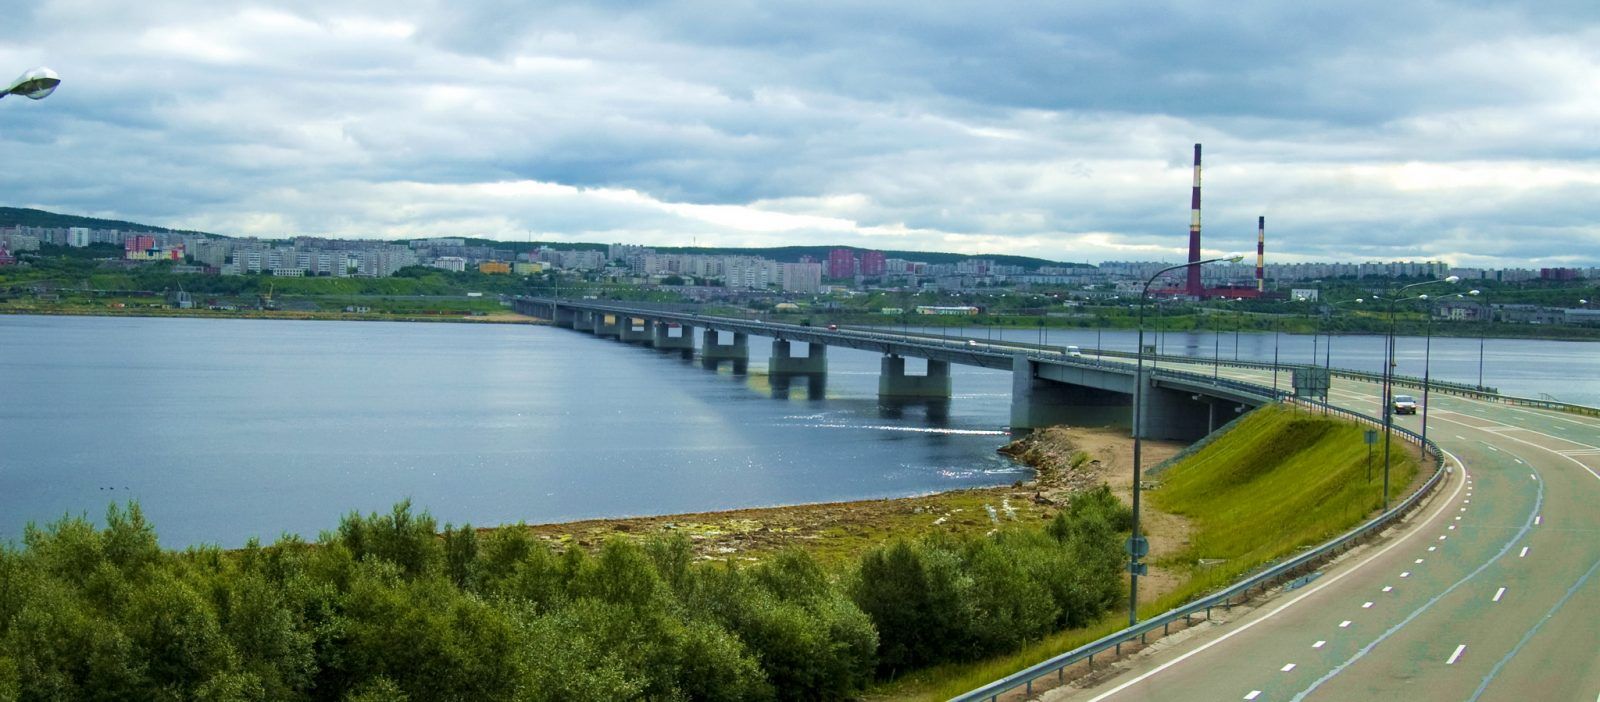 Другой «ударной стройкой» стало возведение самого крупного искусственного сооружения на северо-западе России — моста через Кольский залив в Мурманске протяжённостью 1,6 километра. 